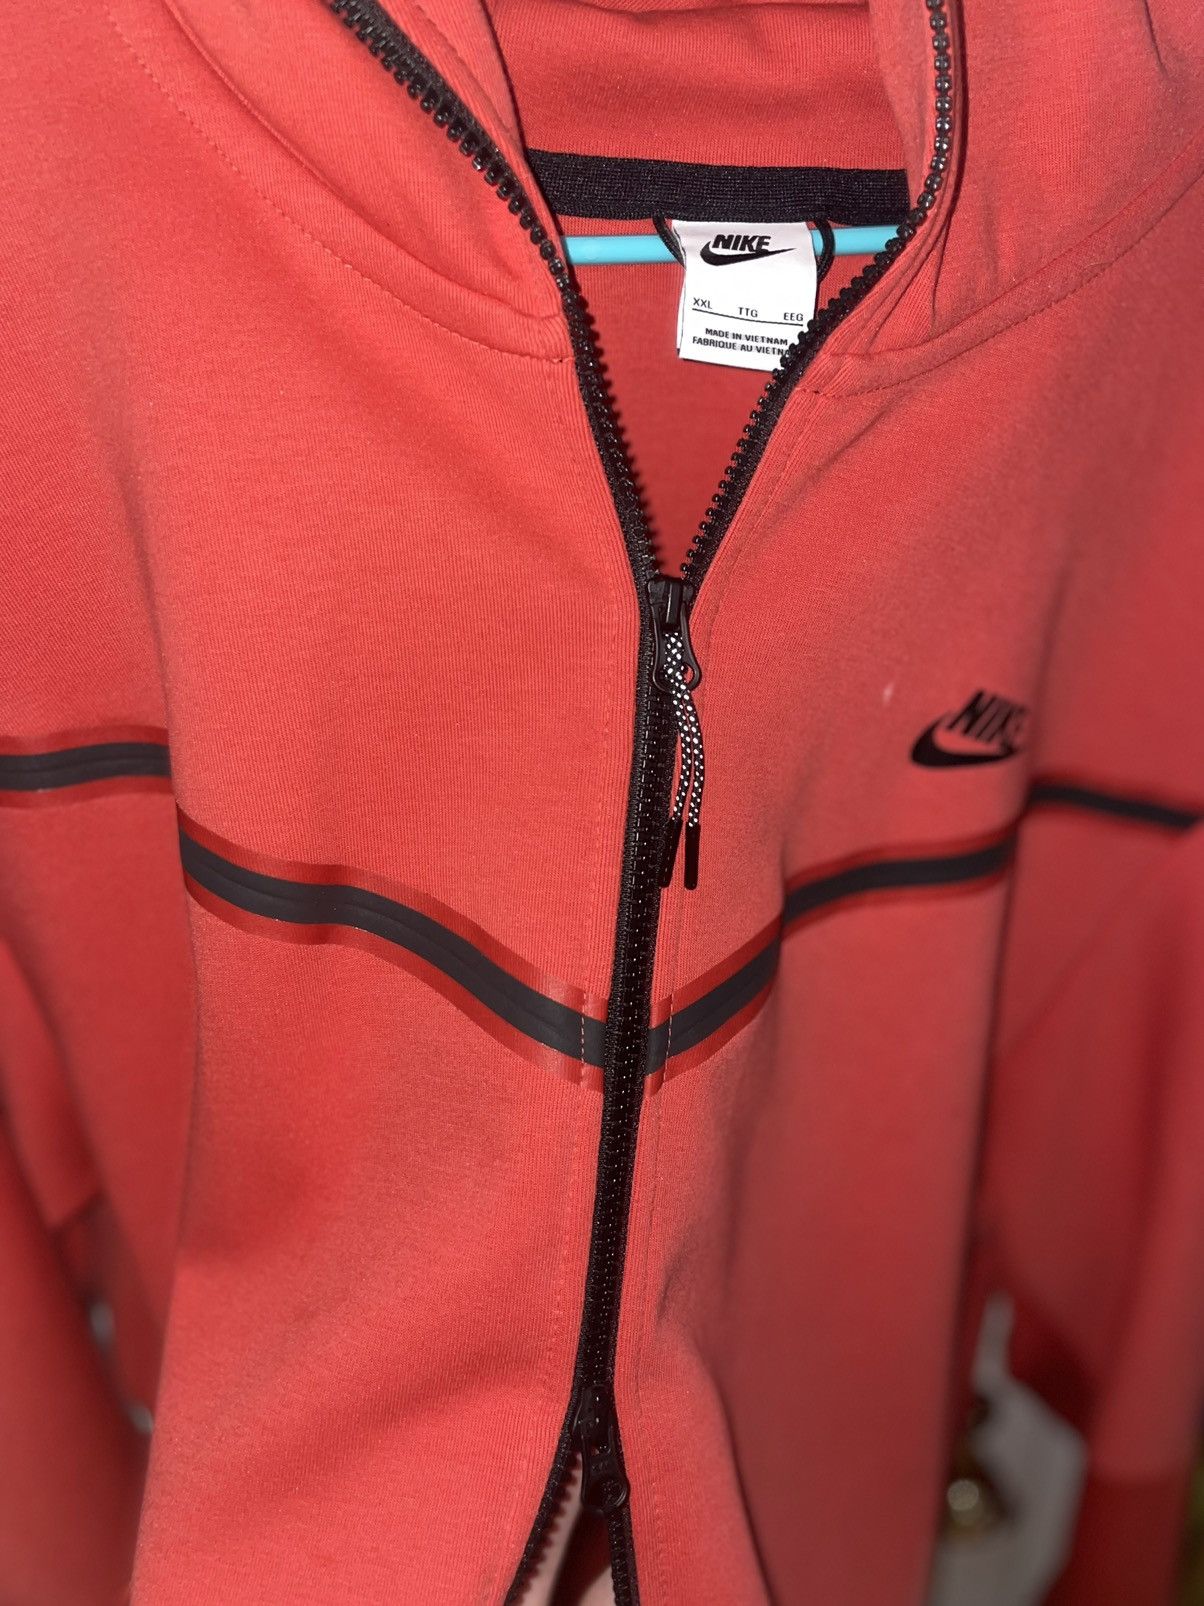 Nike Red Nike Tech Fleece Hoodie Zip up sweatshirt Size XXL Size US XXL / EU 58 / 5 - 3 Thumbnail